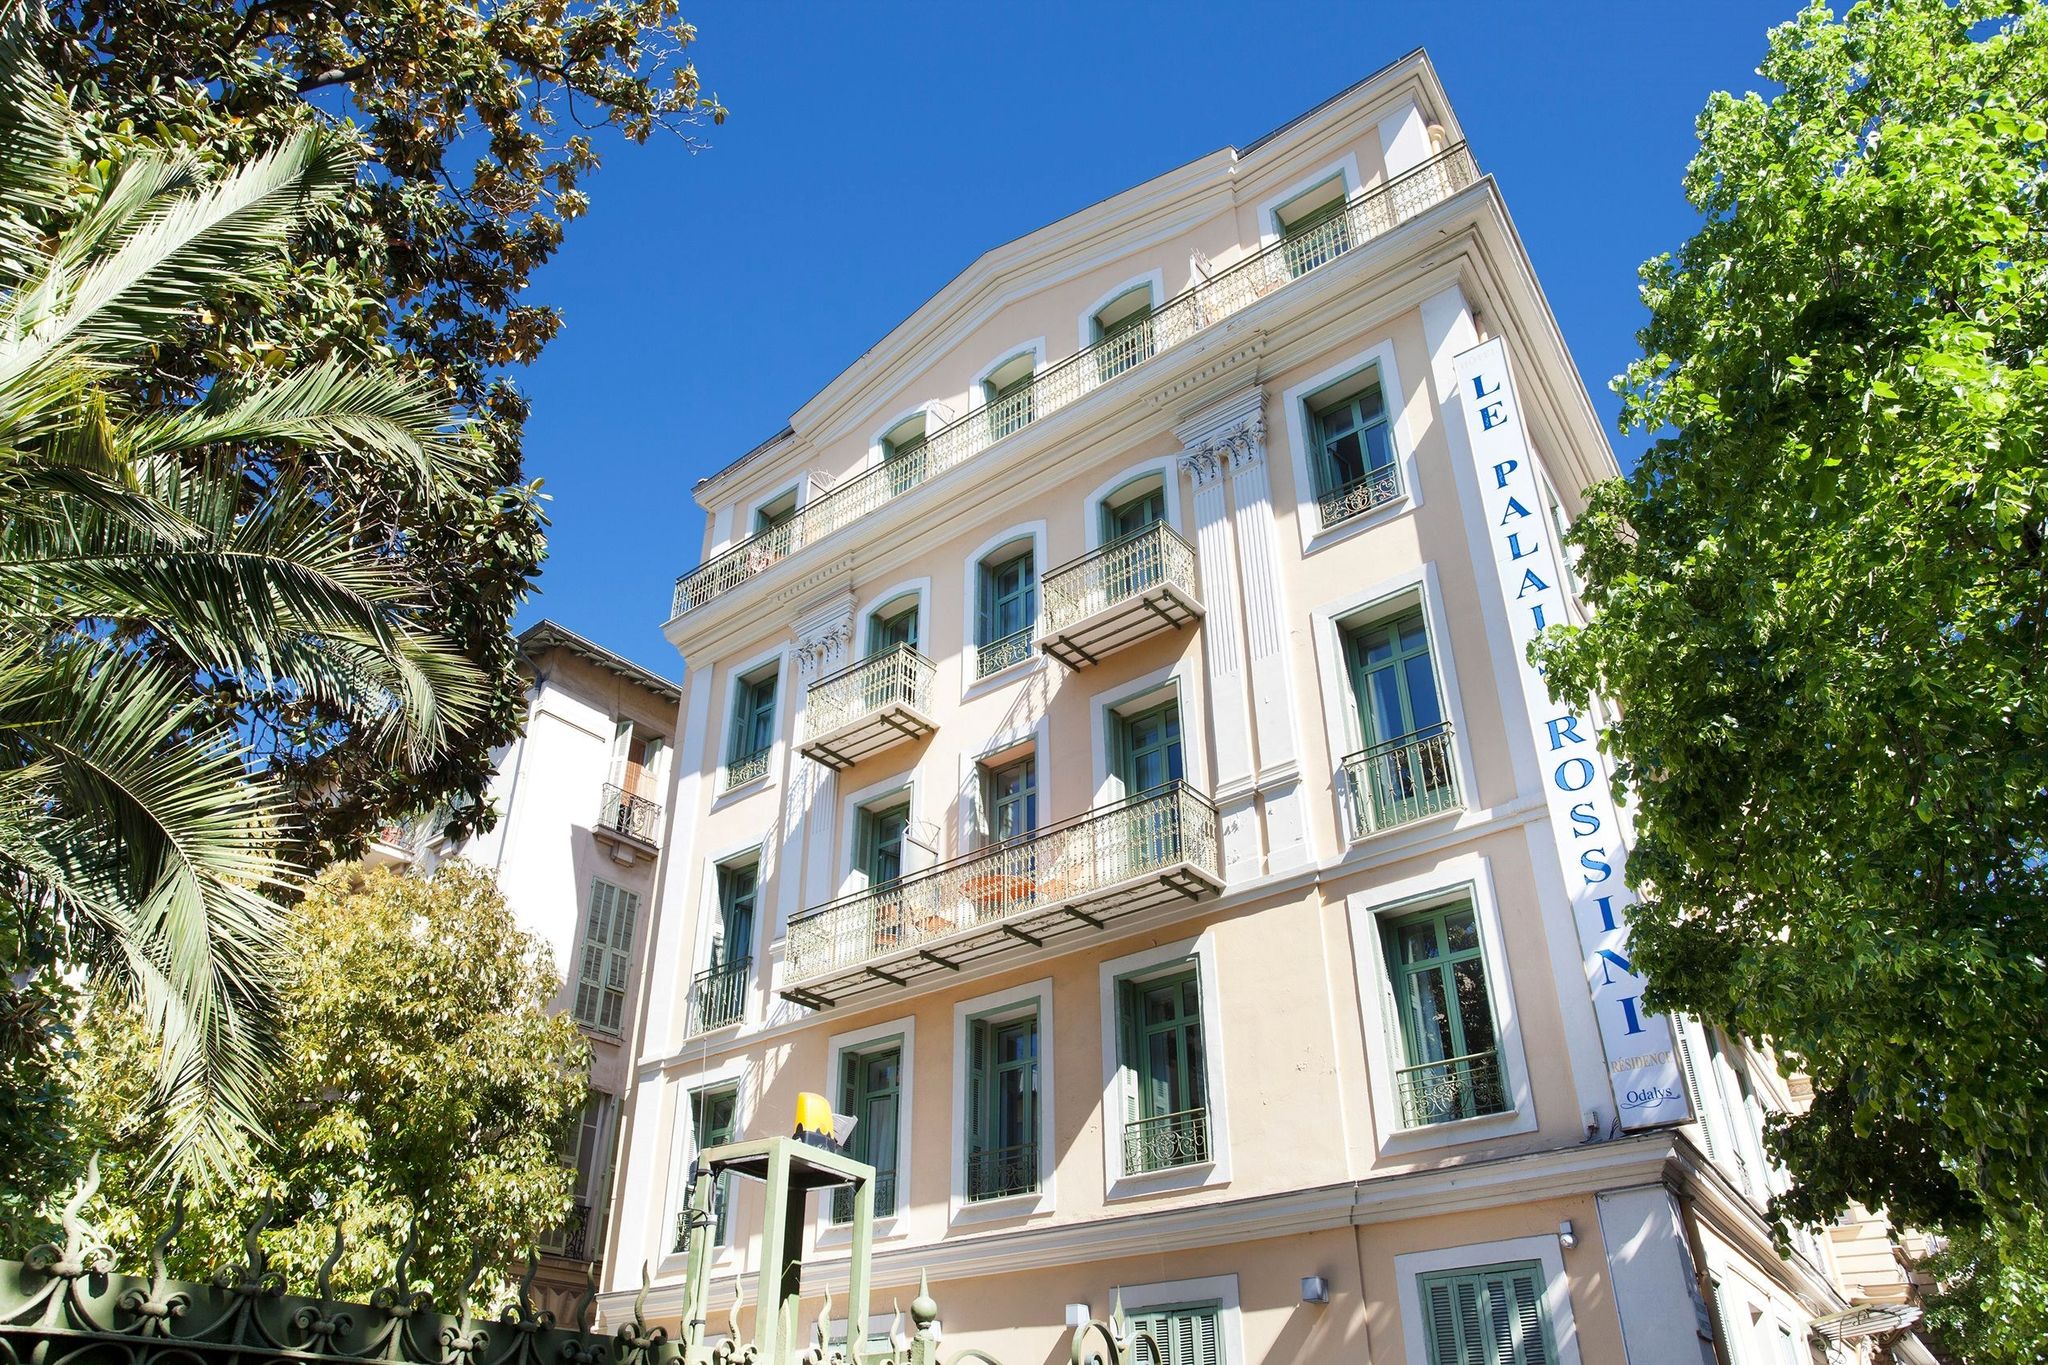 Bel appartement dans un ancien hôtel au cœur de Nice